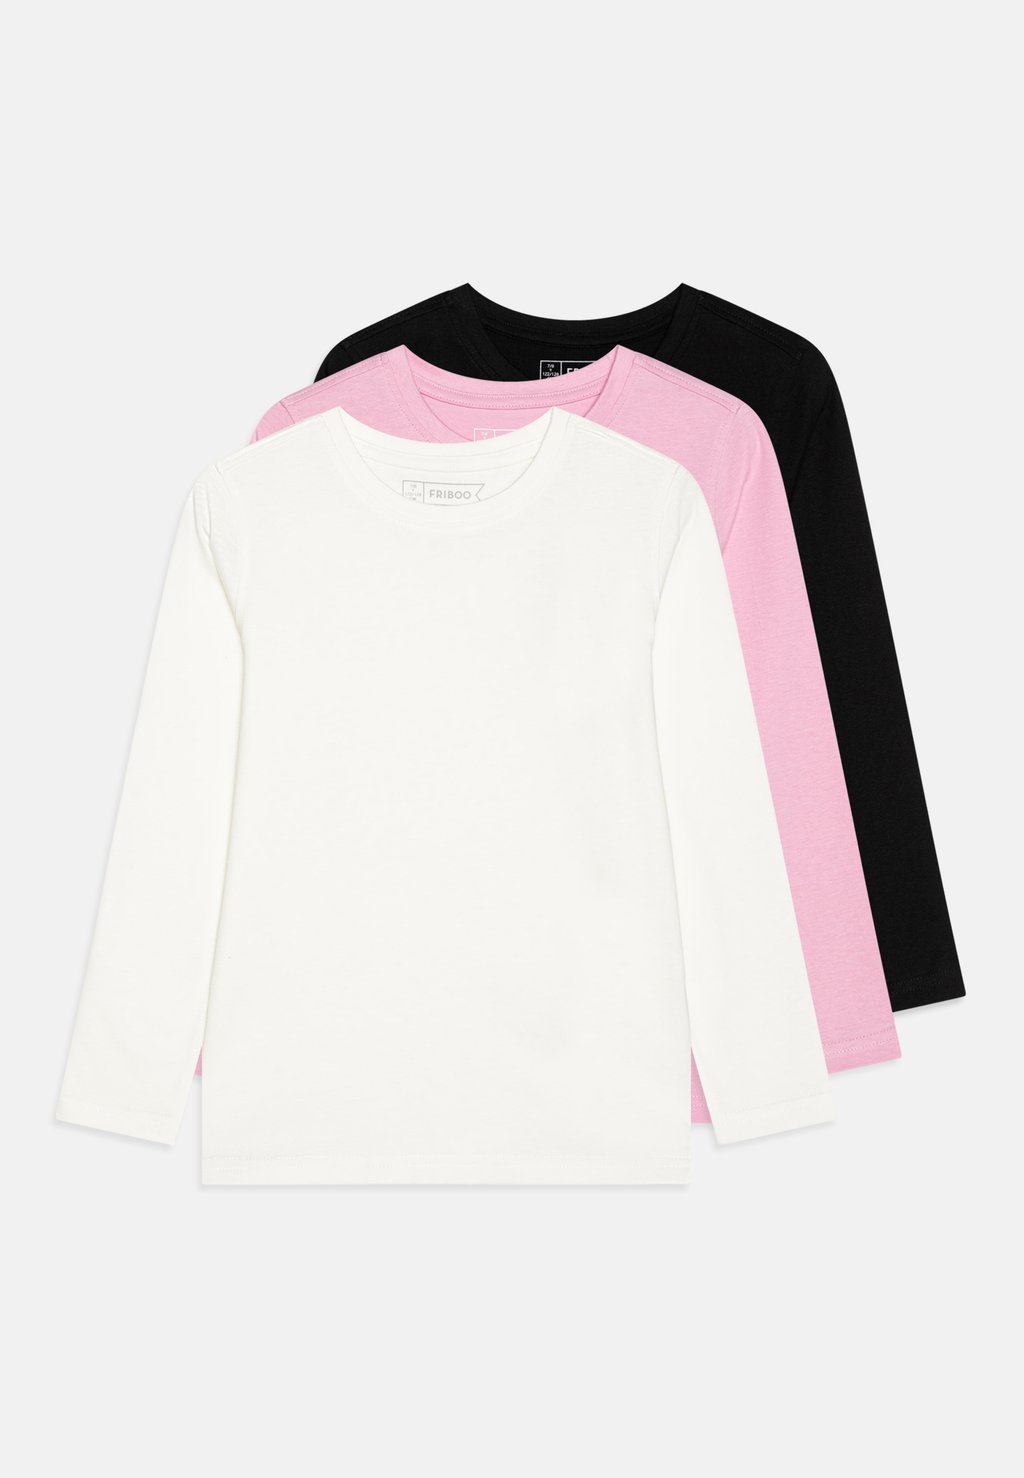 футболка с длинным рукавом 5 pack friboo цвет black red light pink футболка с длинным рукавом Unisex 3 Pack Friboo, цвет black/light pink/white